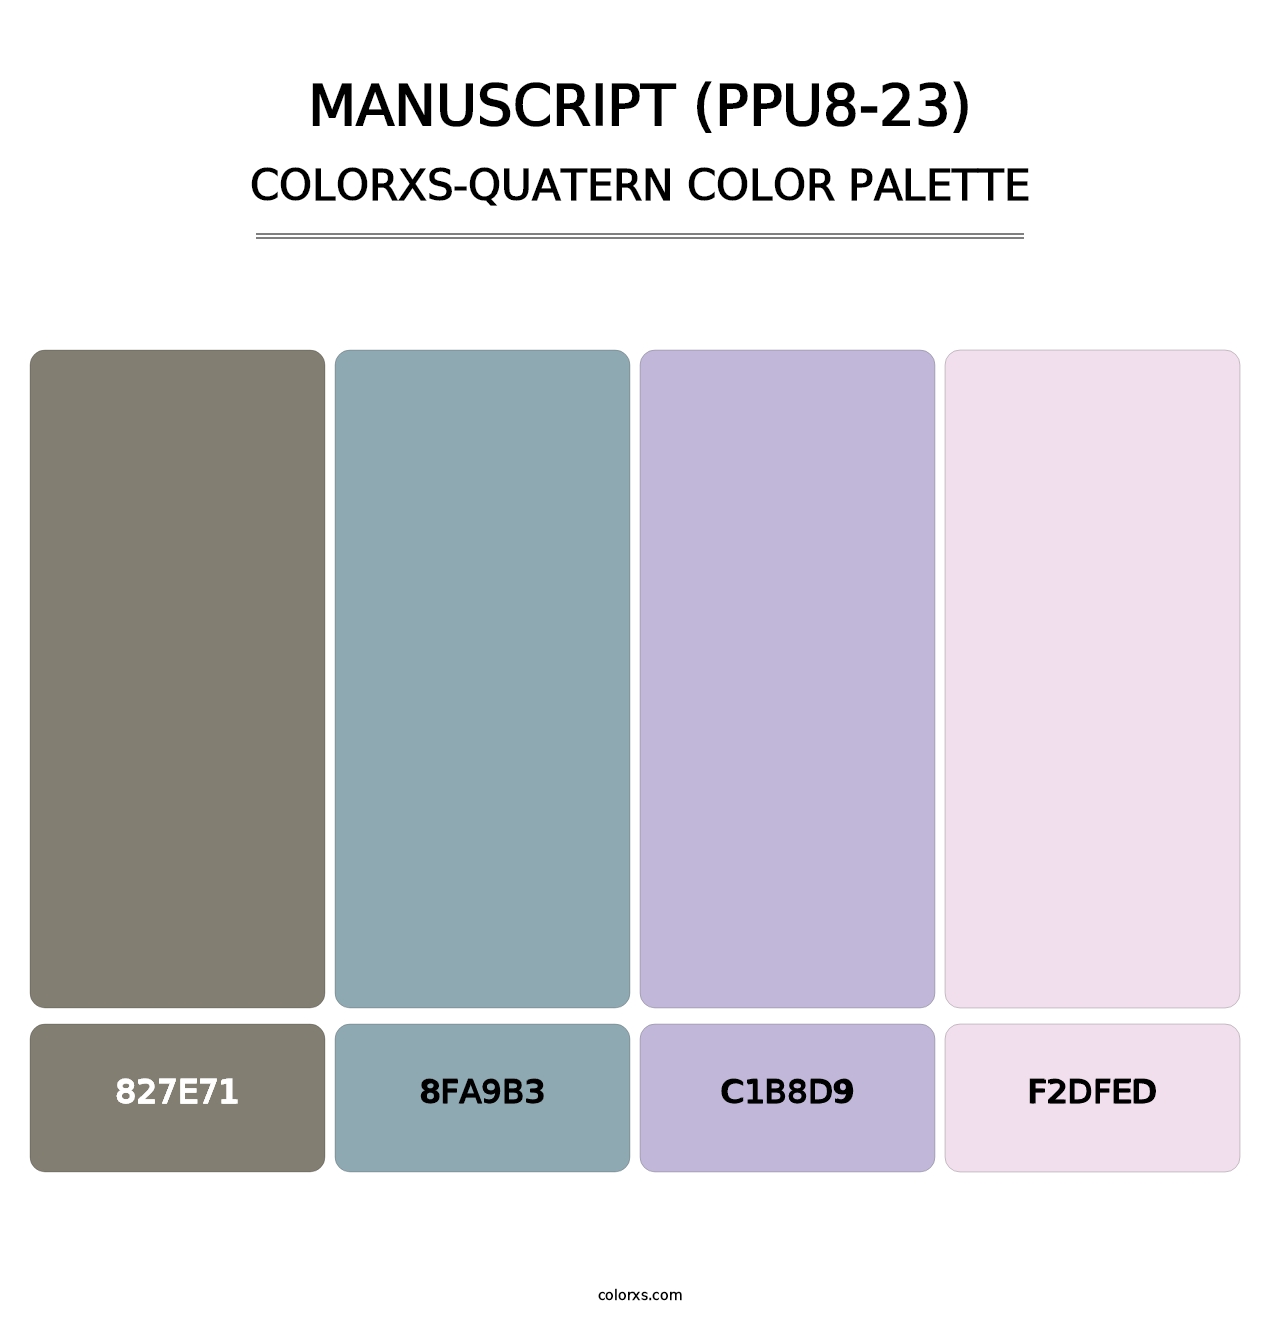 Manuscript (PPU8-23) - Colorxs Quatern Palette